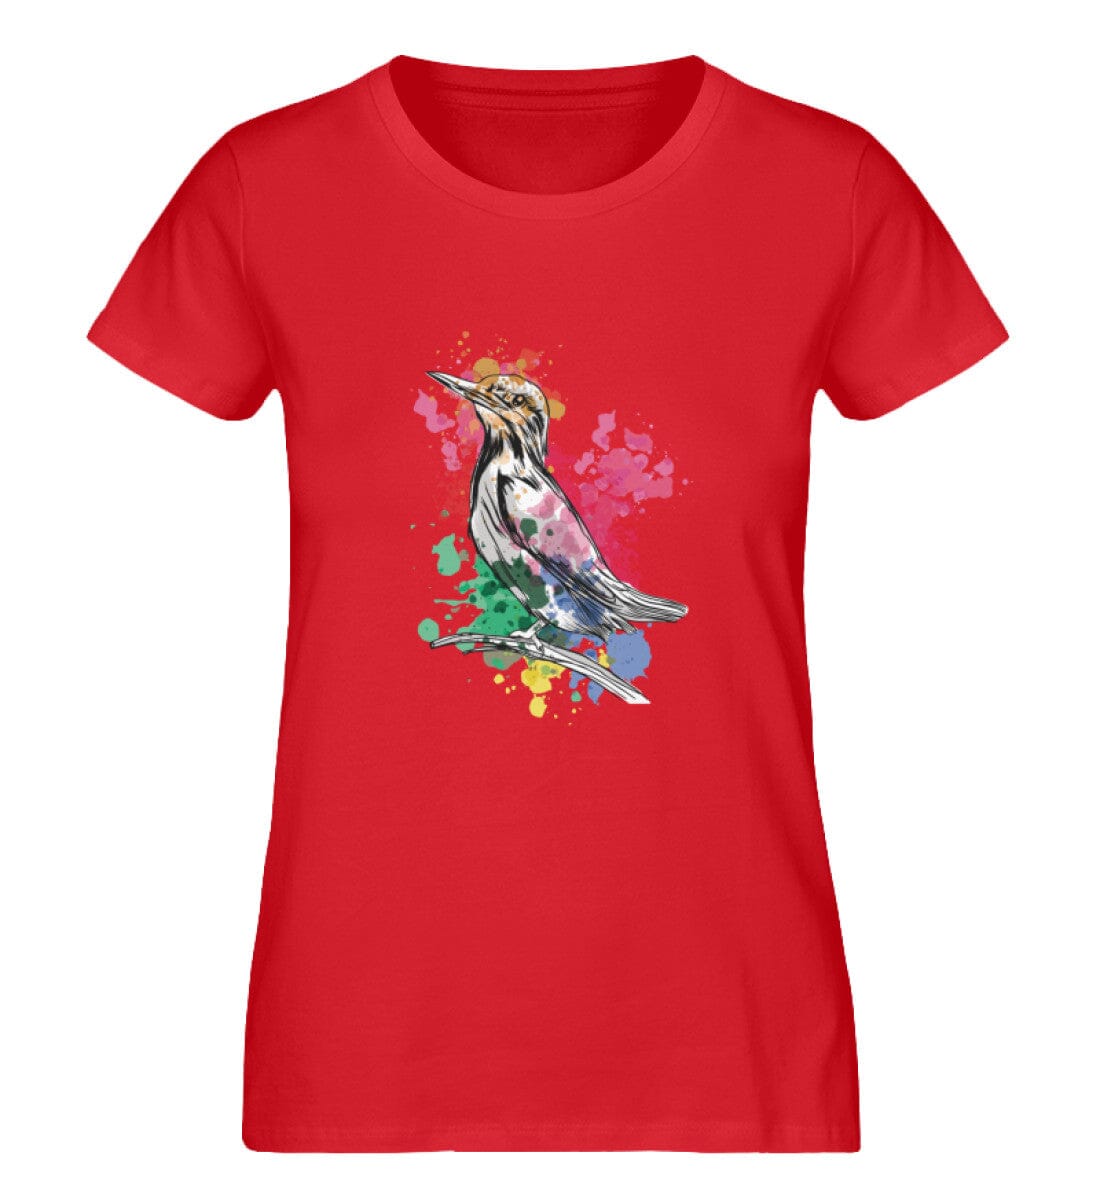 Wasserfarben-Vogel - Damen Premium Bio Shirt Red S 